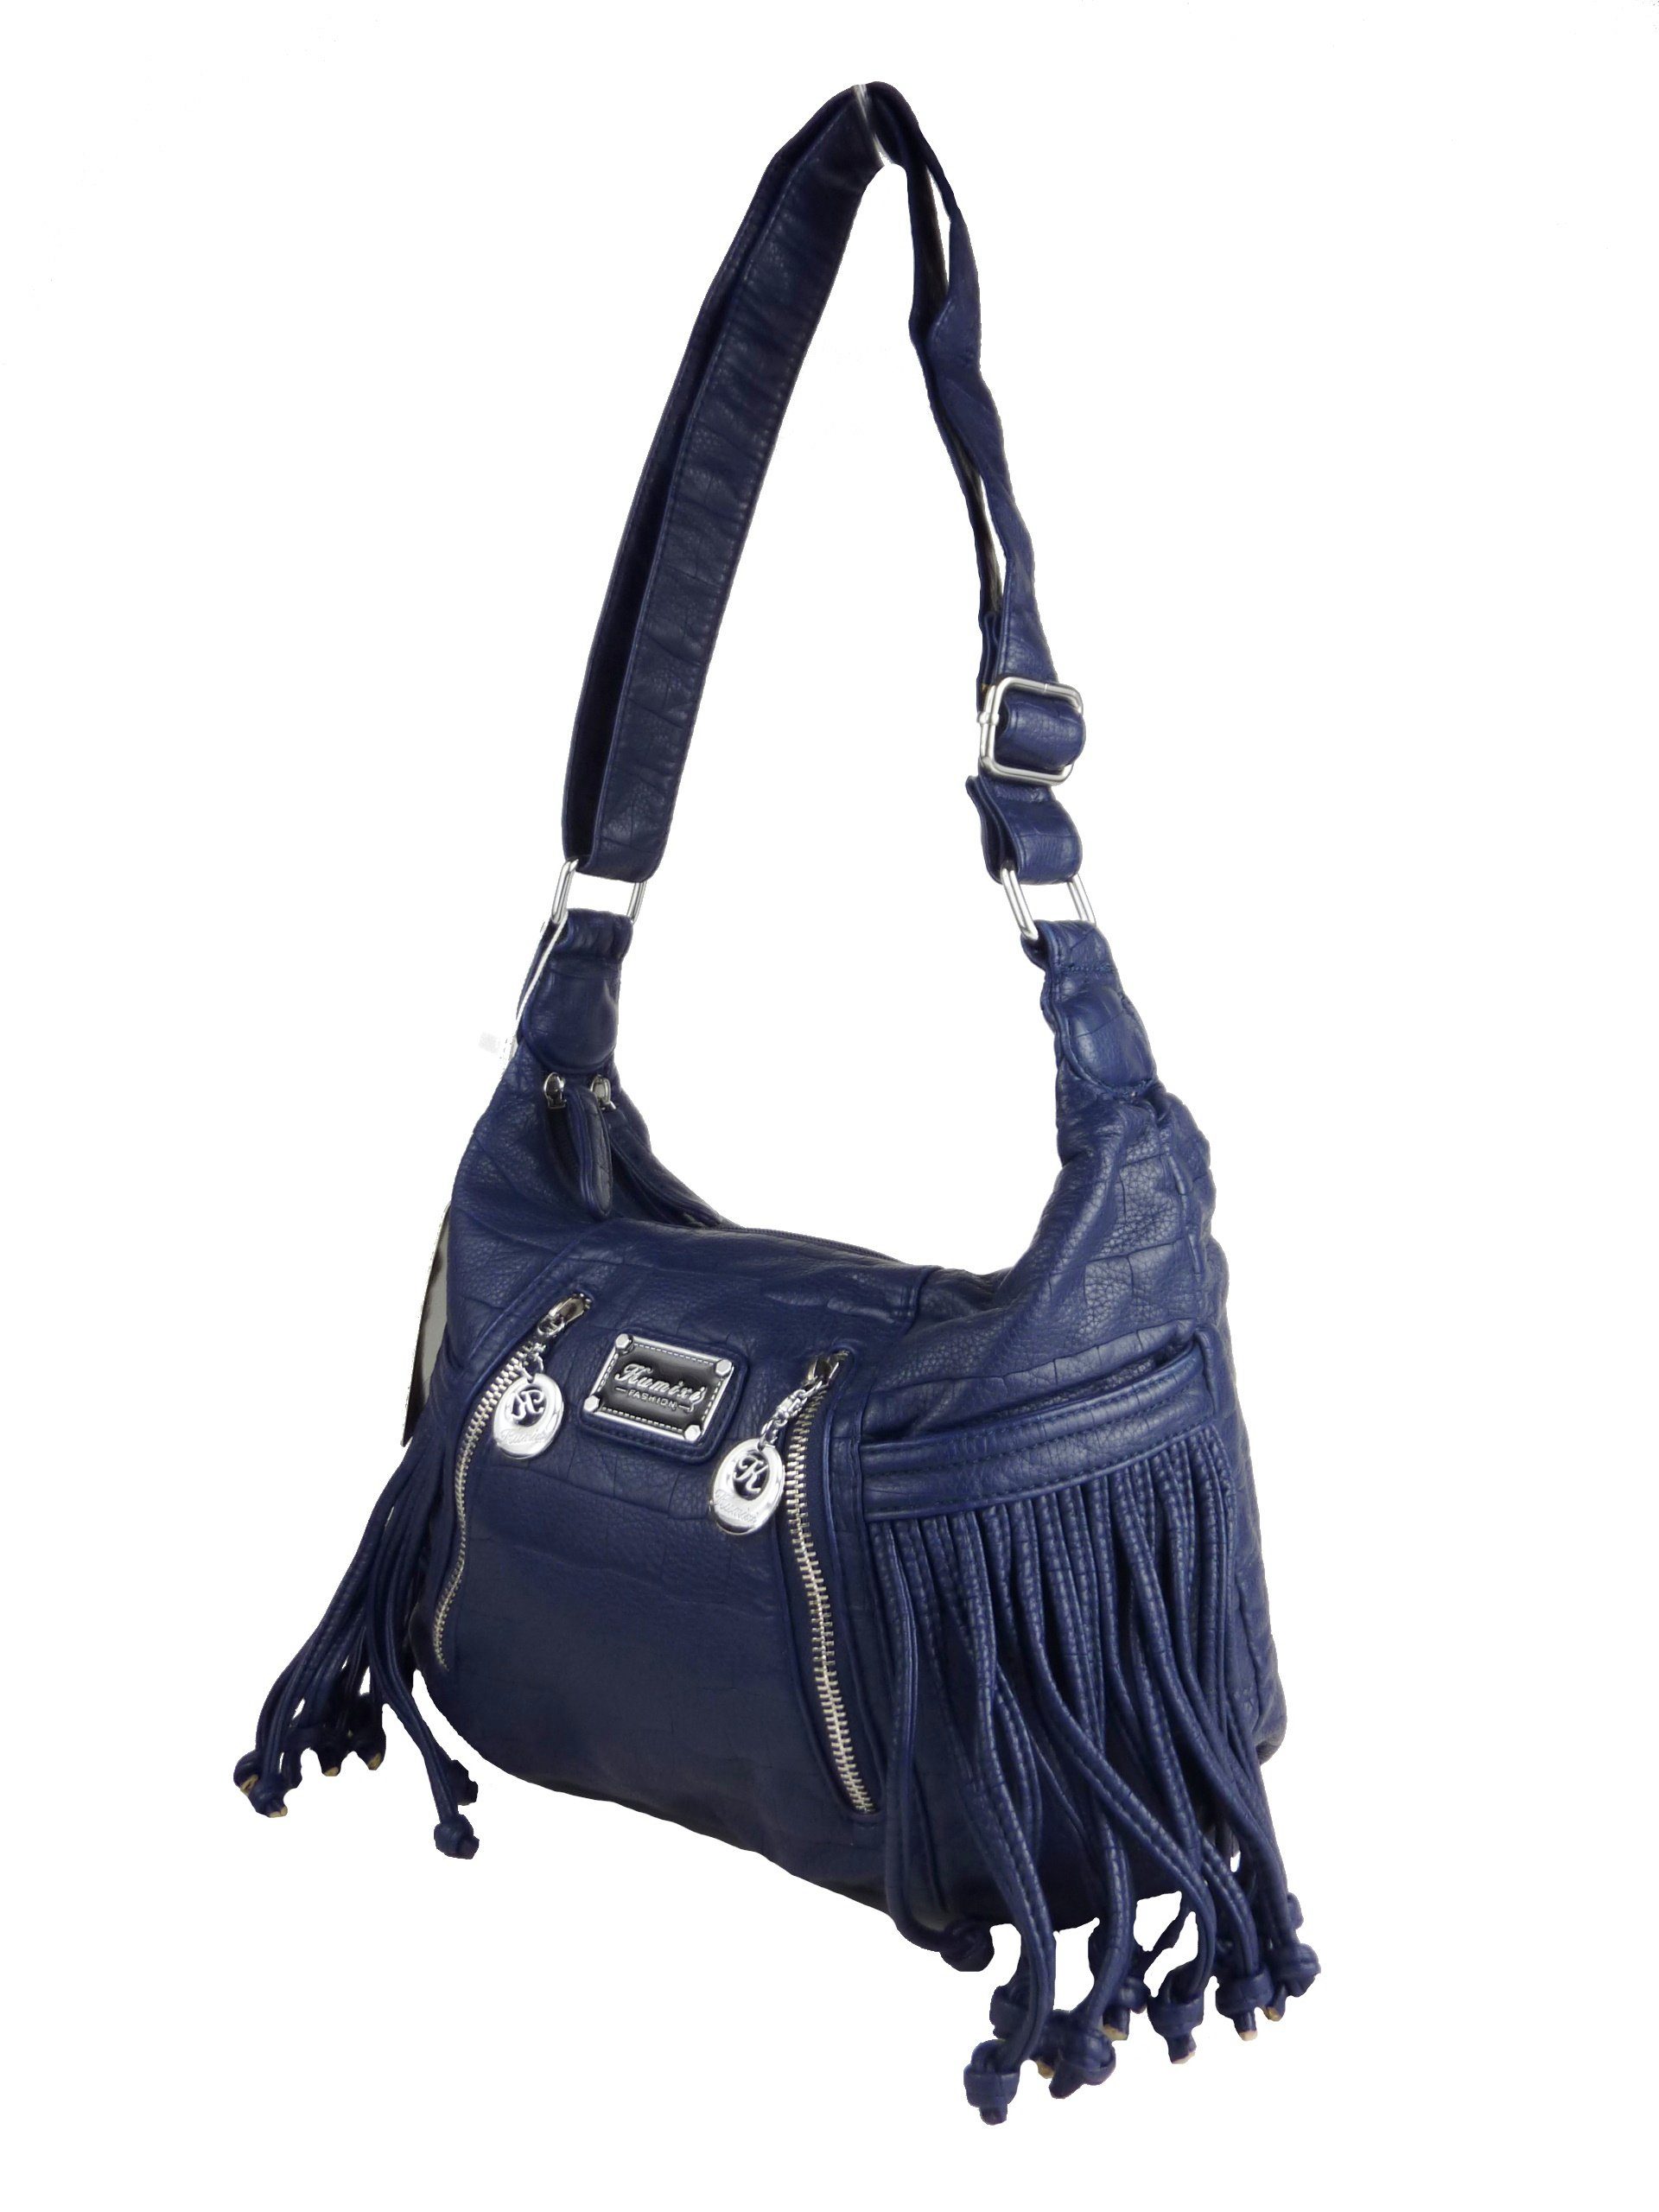 Trageriemen Damentasche, langer mit Taschen4life Fransentasche Fächer, Fransen Umhängetasche mit KM1512, Fransentasche blau